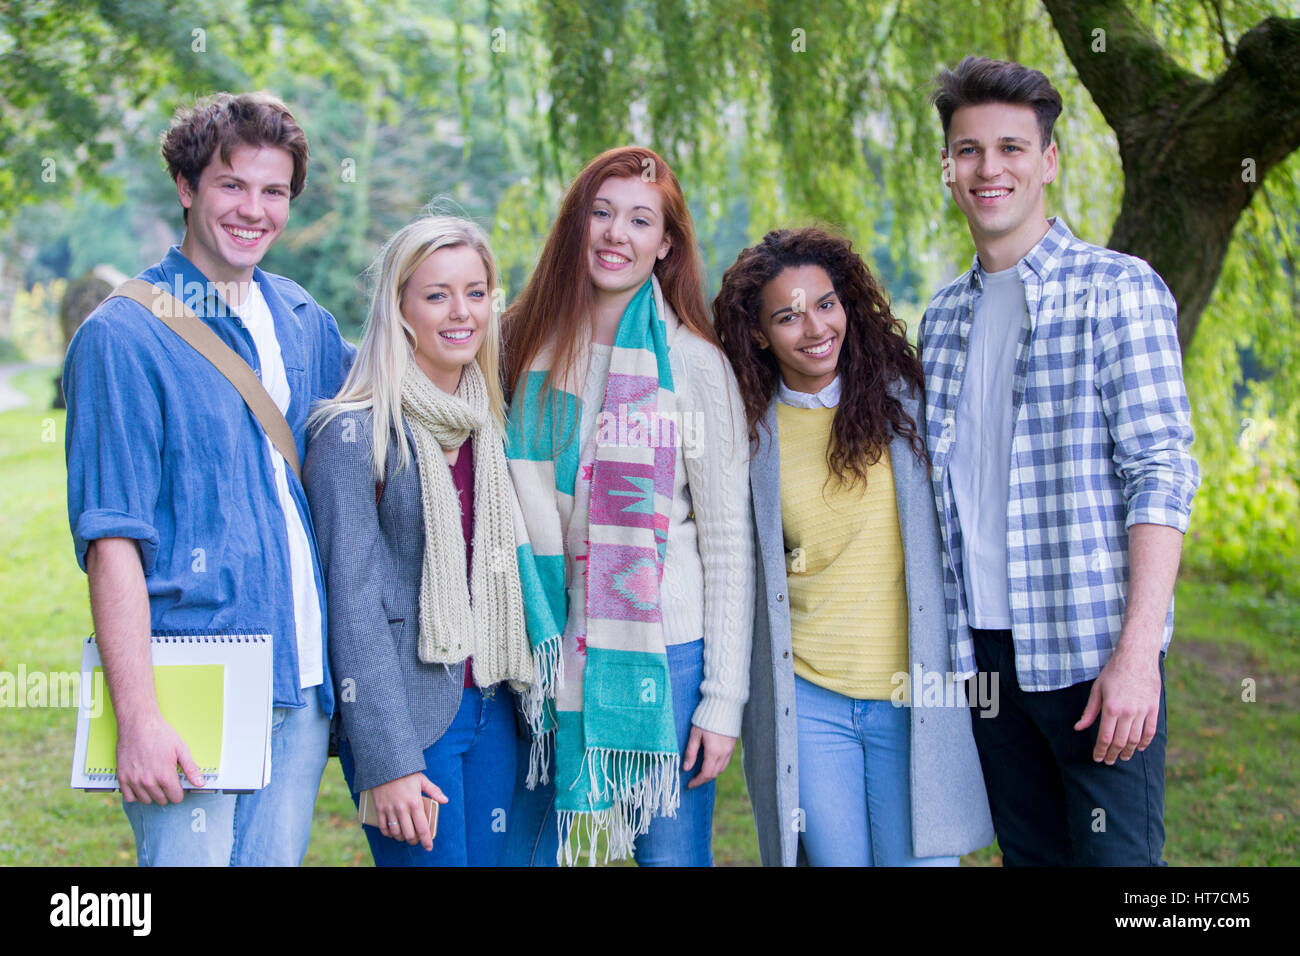 Un grupo multiétnico de estudiantes adolescentes que sonreír a la cámara, ya que posan para una fotografía en el exterior. Están envueltos caliente durante el invierno und permanente Foto de stock